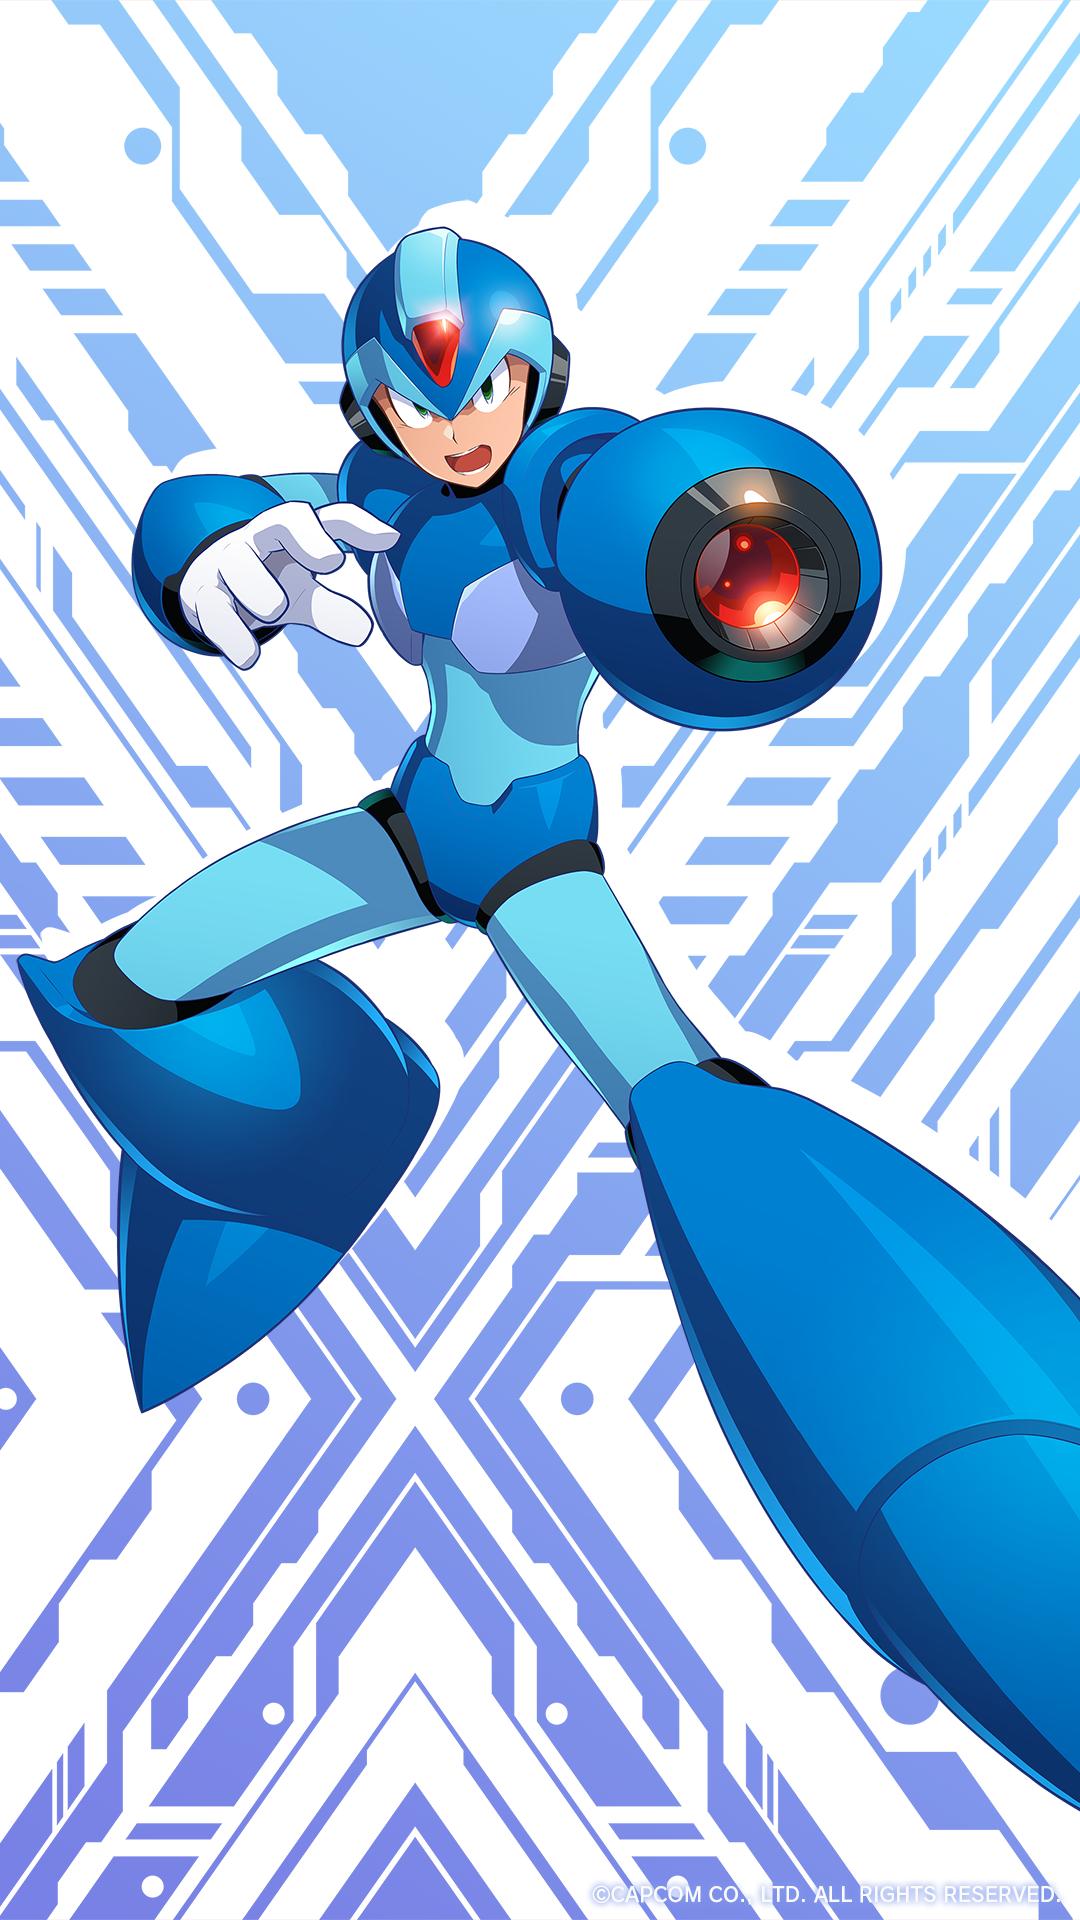 Mega Man X - Wikipedia